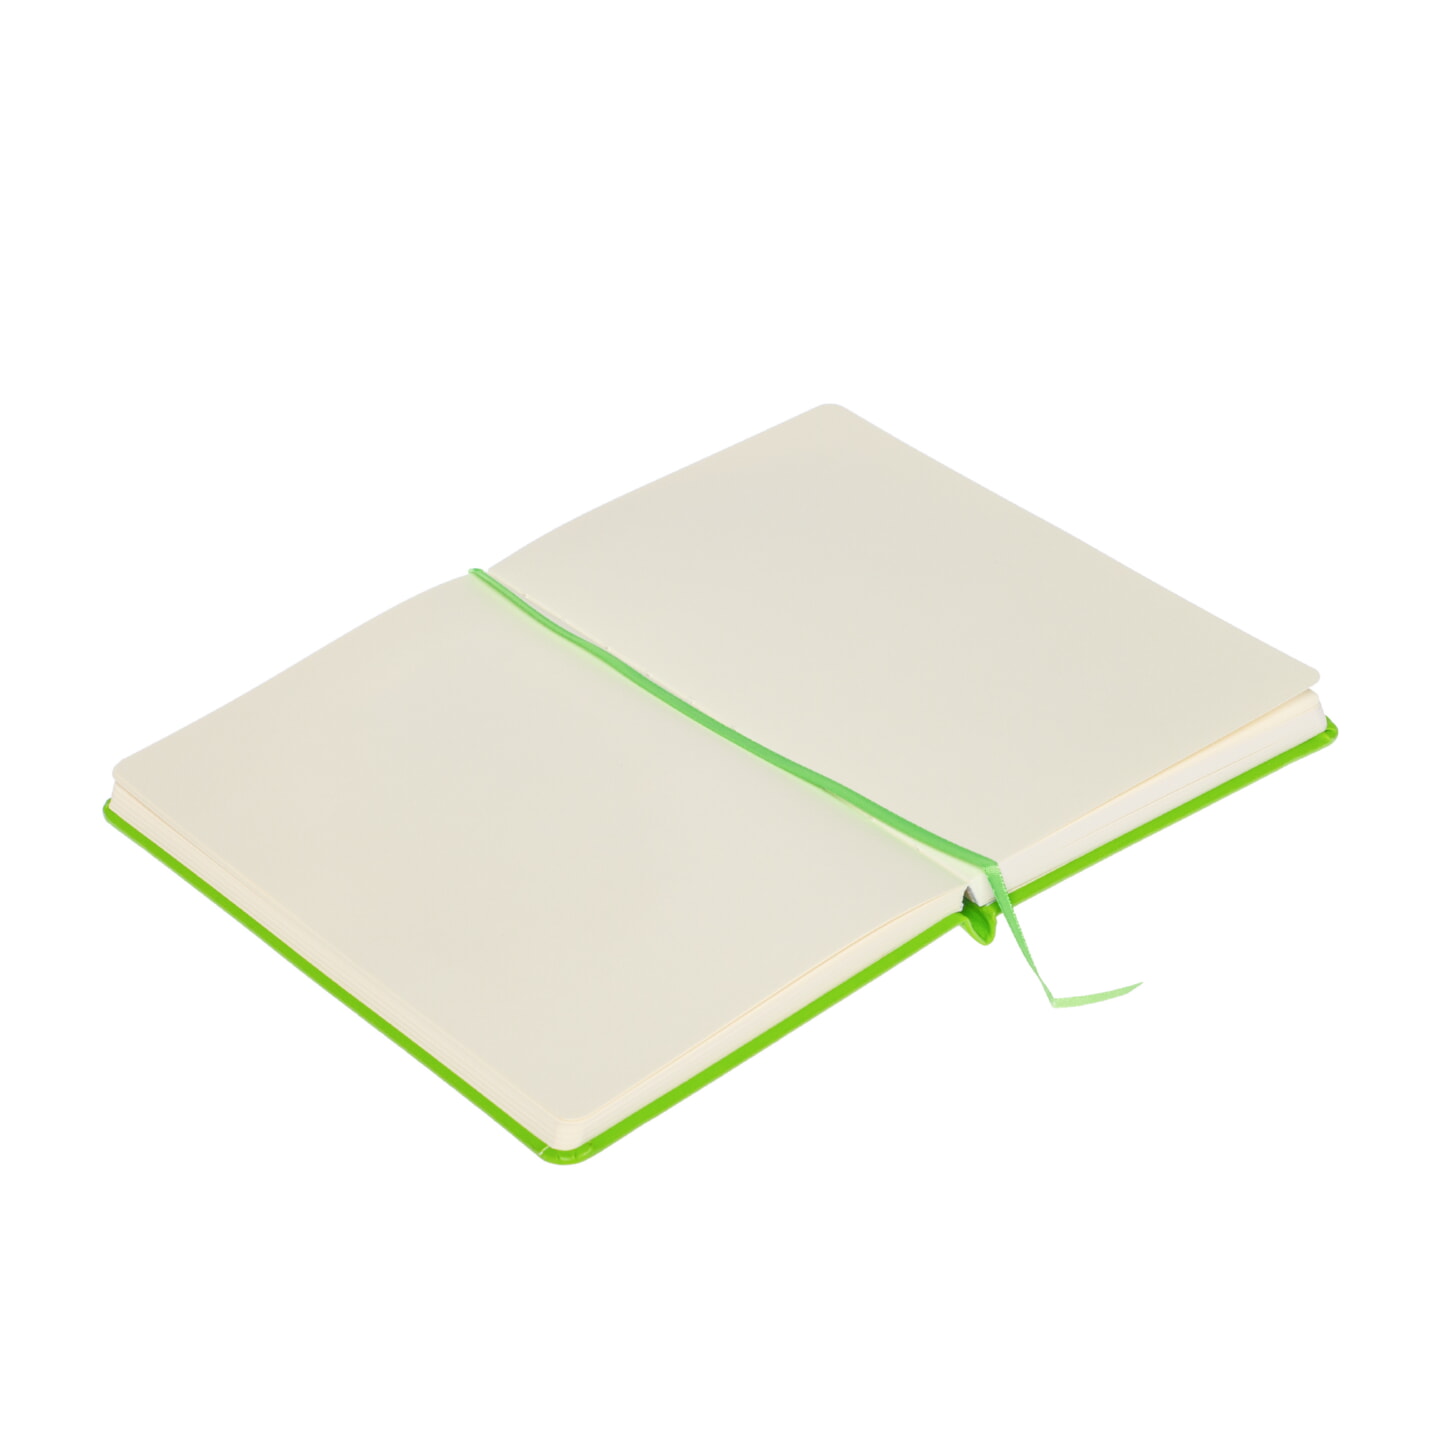 Блокнот для зарисовок Sketchmarker 140г/кв.м 13*21см 80л твердая обложка Зеленый луг